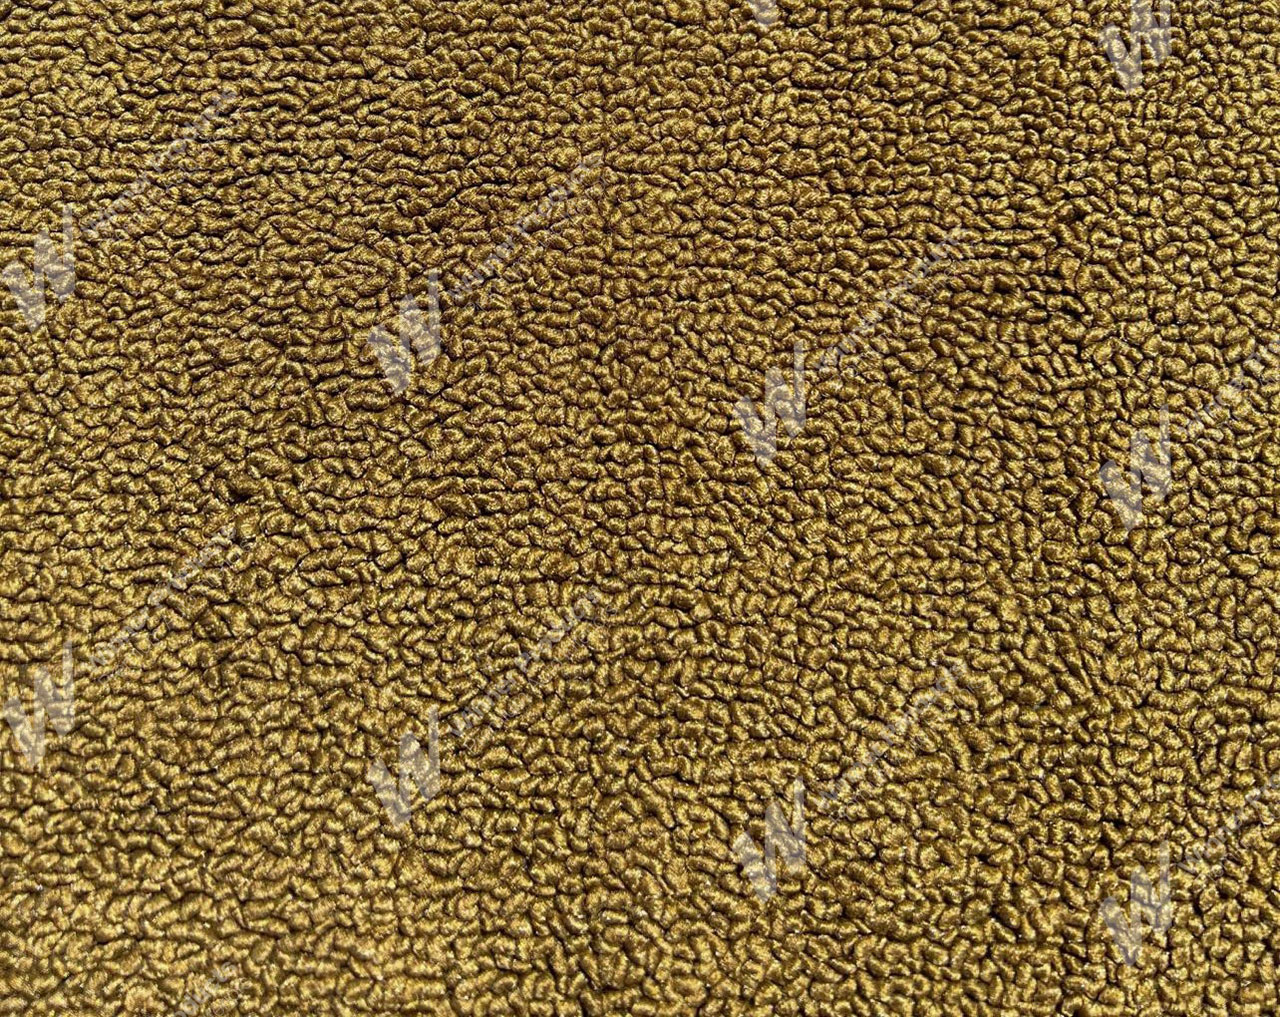 Holden Kingswood HG Kingswood Ute 11E Antique Gold Carpet (Image 1 of 1)